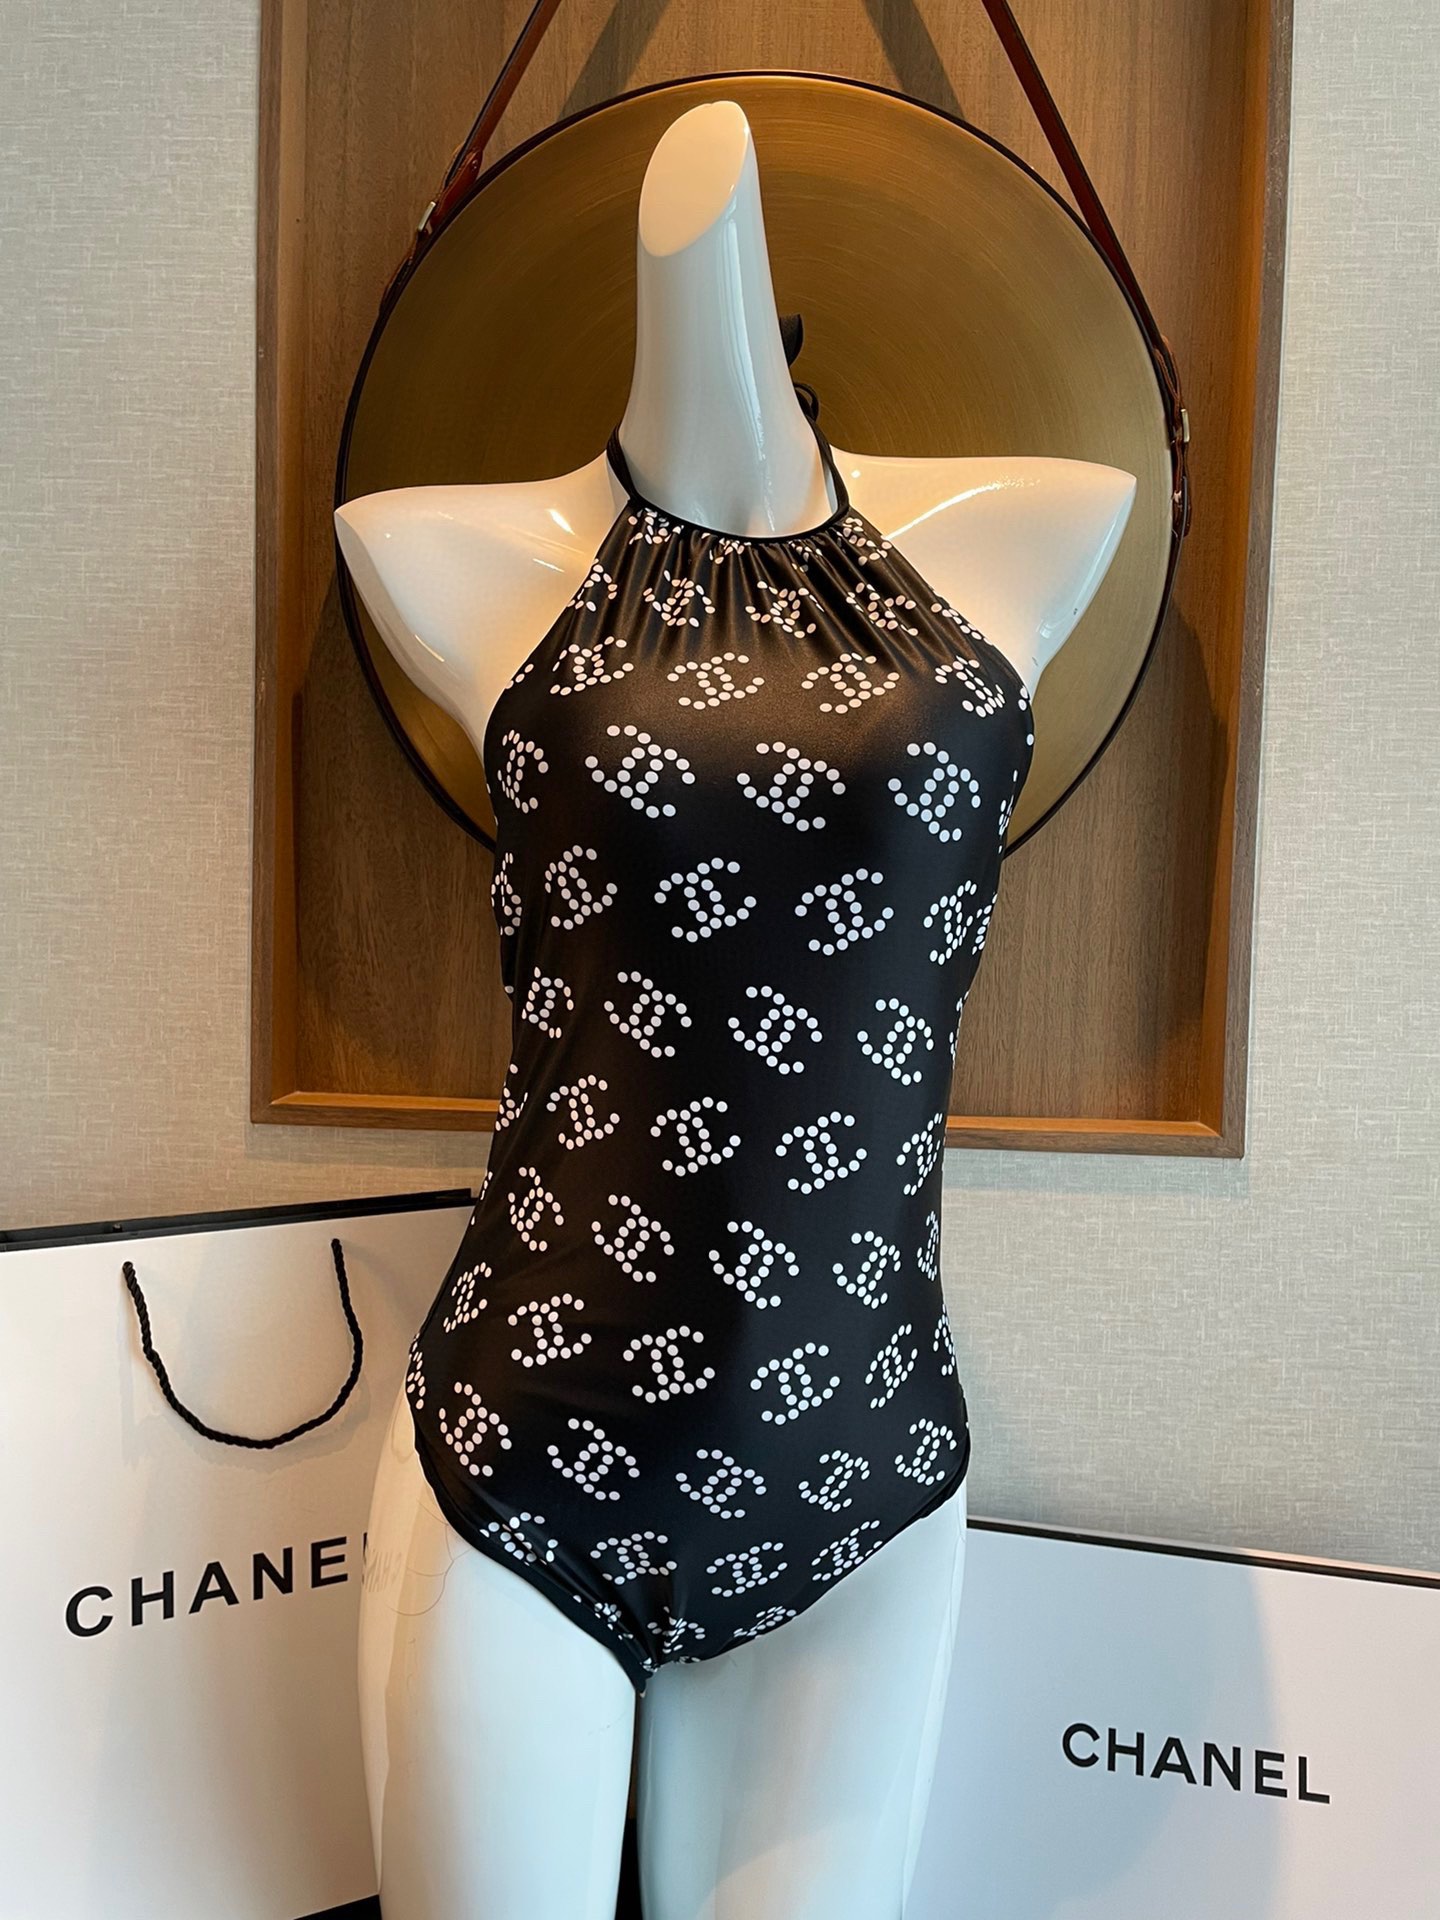 Chanel印花系列最新款旅游拍照打卡必备单品超级出片️搭配裤裙纱裙超美数量有限姐妹们冲冲冲️️️码数S